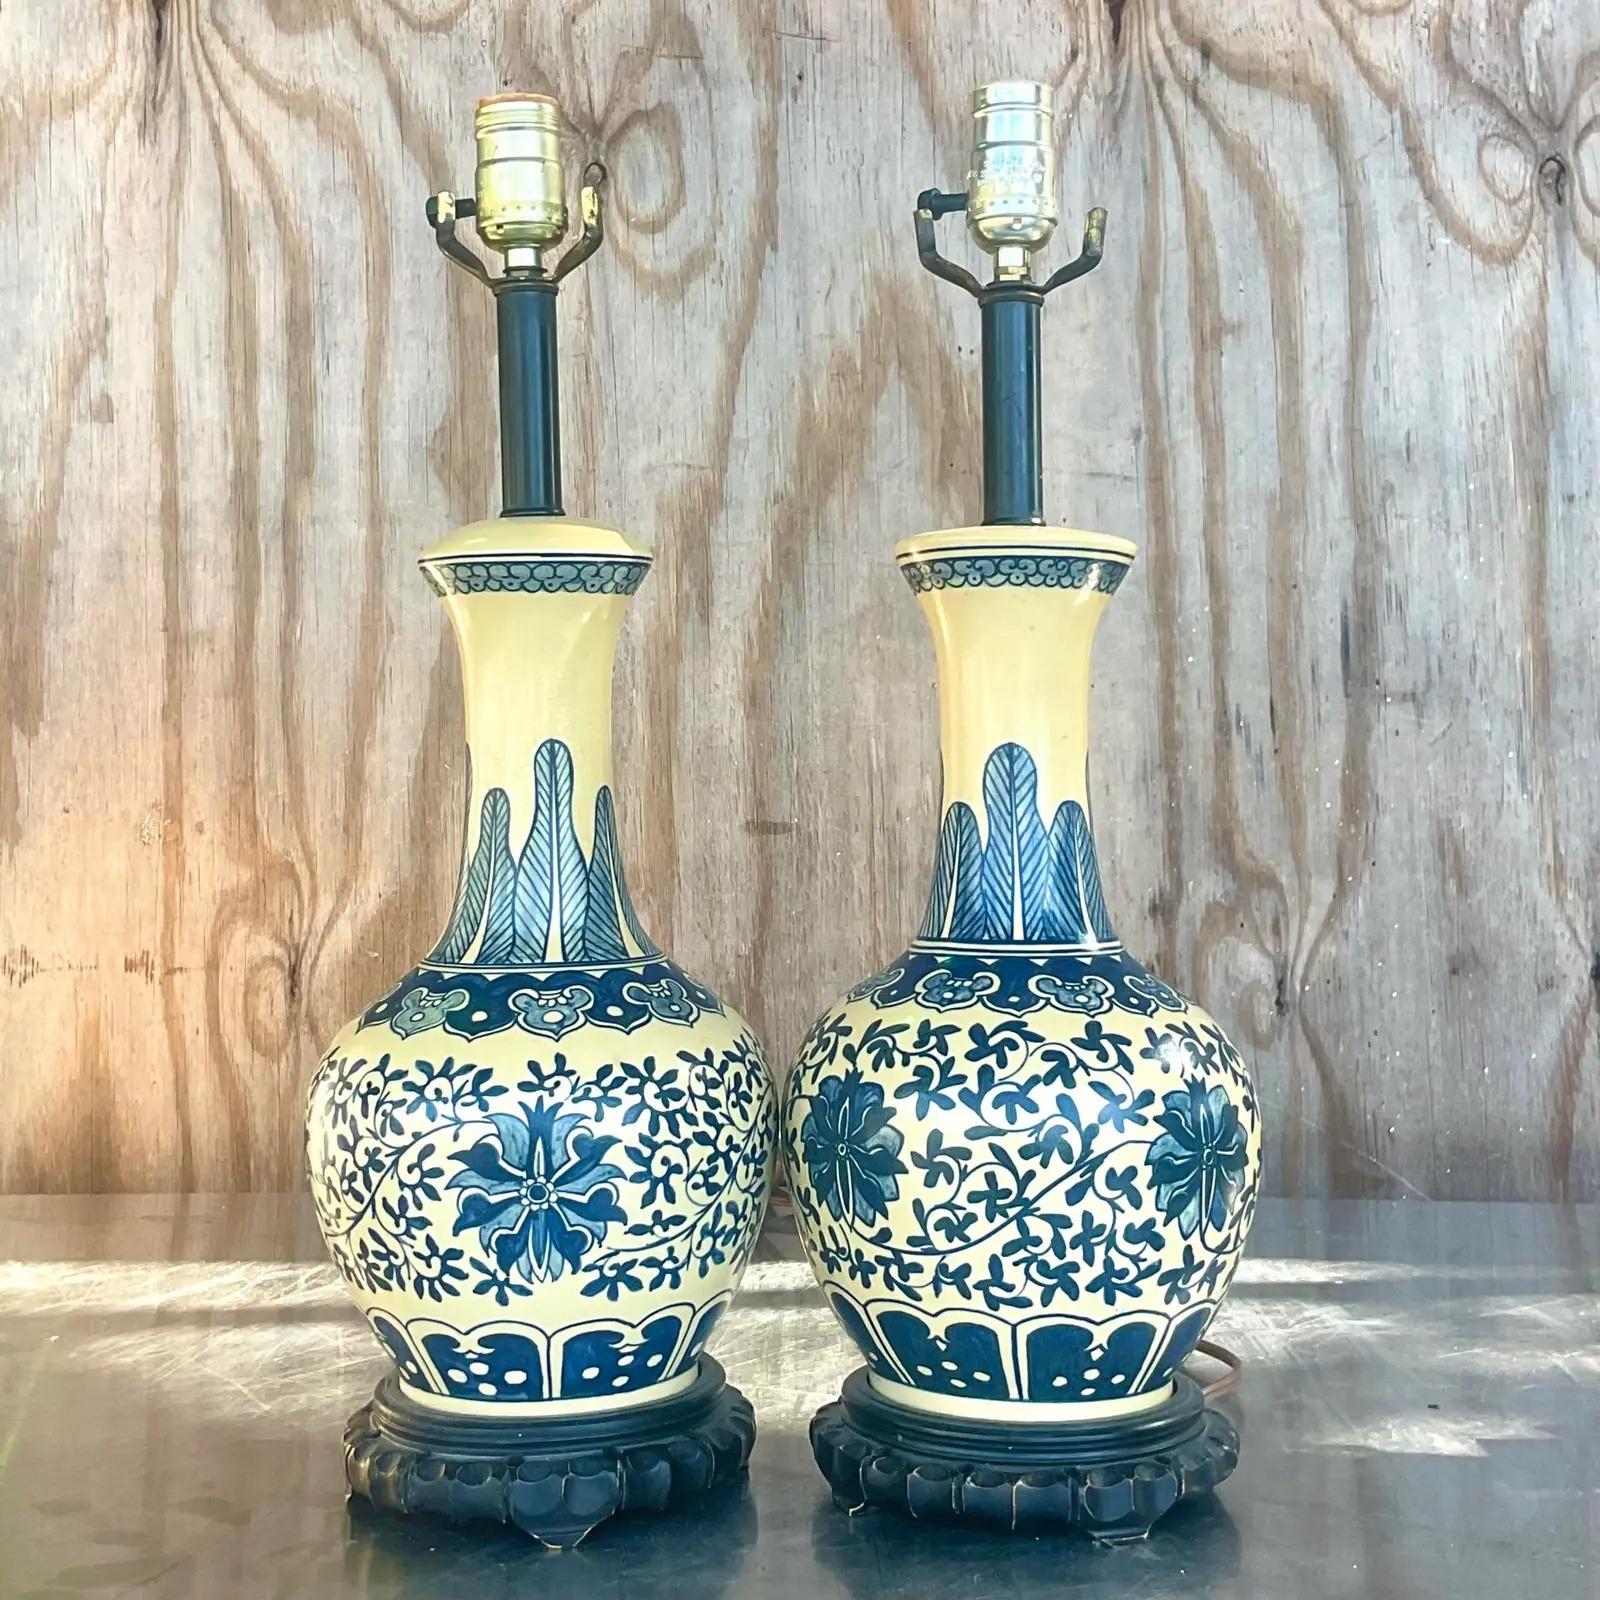 Fantastique paire de lampes de table vintage en céramique émaillée. Magnifique motif bleu peint à la main sur fond crème. Acquis auprès d'une succession de Palm Beach.

Les lampes sont en très bon état. Petites éraflures et imperfections